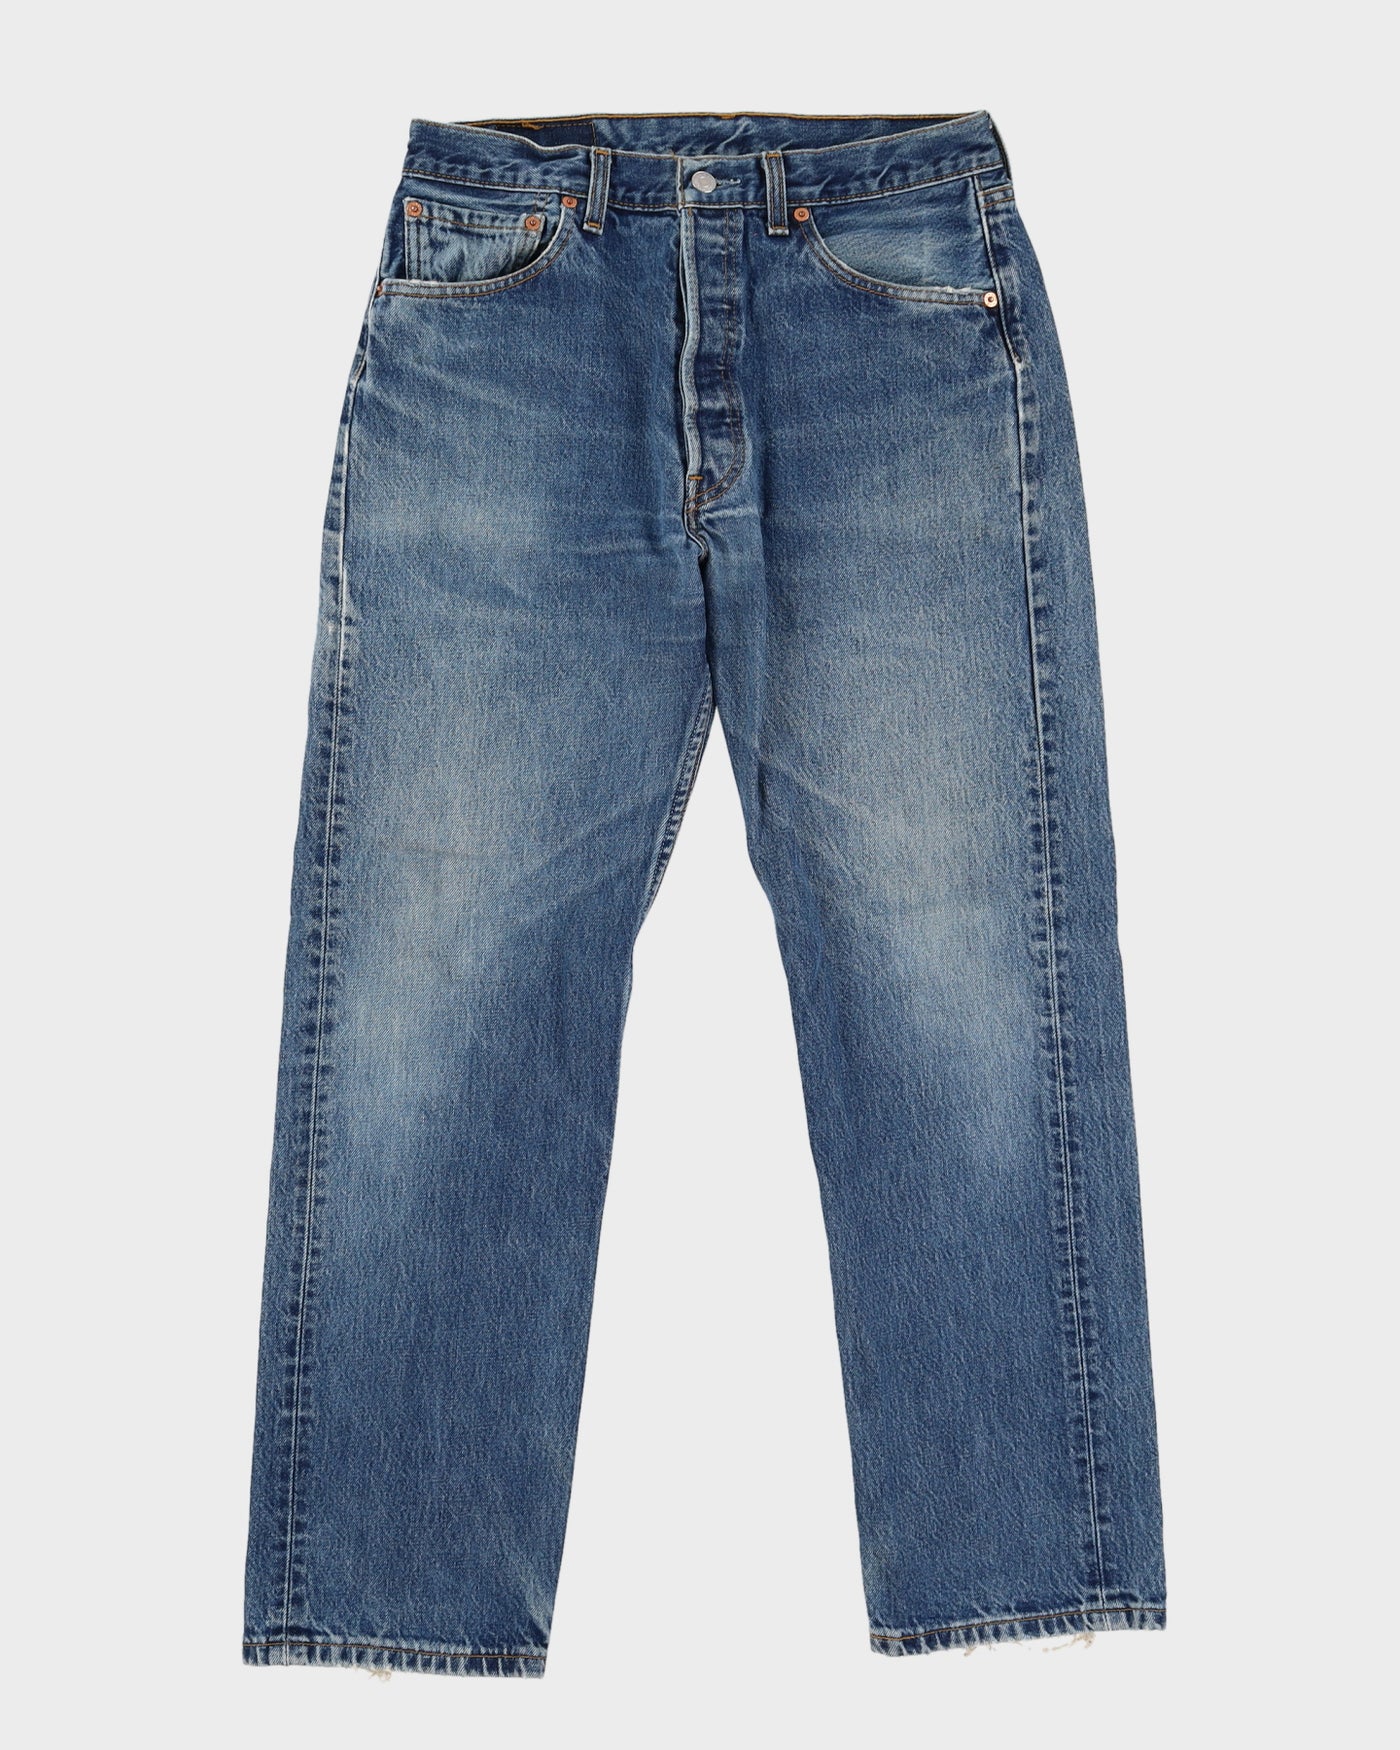 Vintage 90s Levi's 501 Blue Jeans - W32 L29